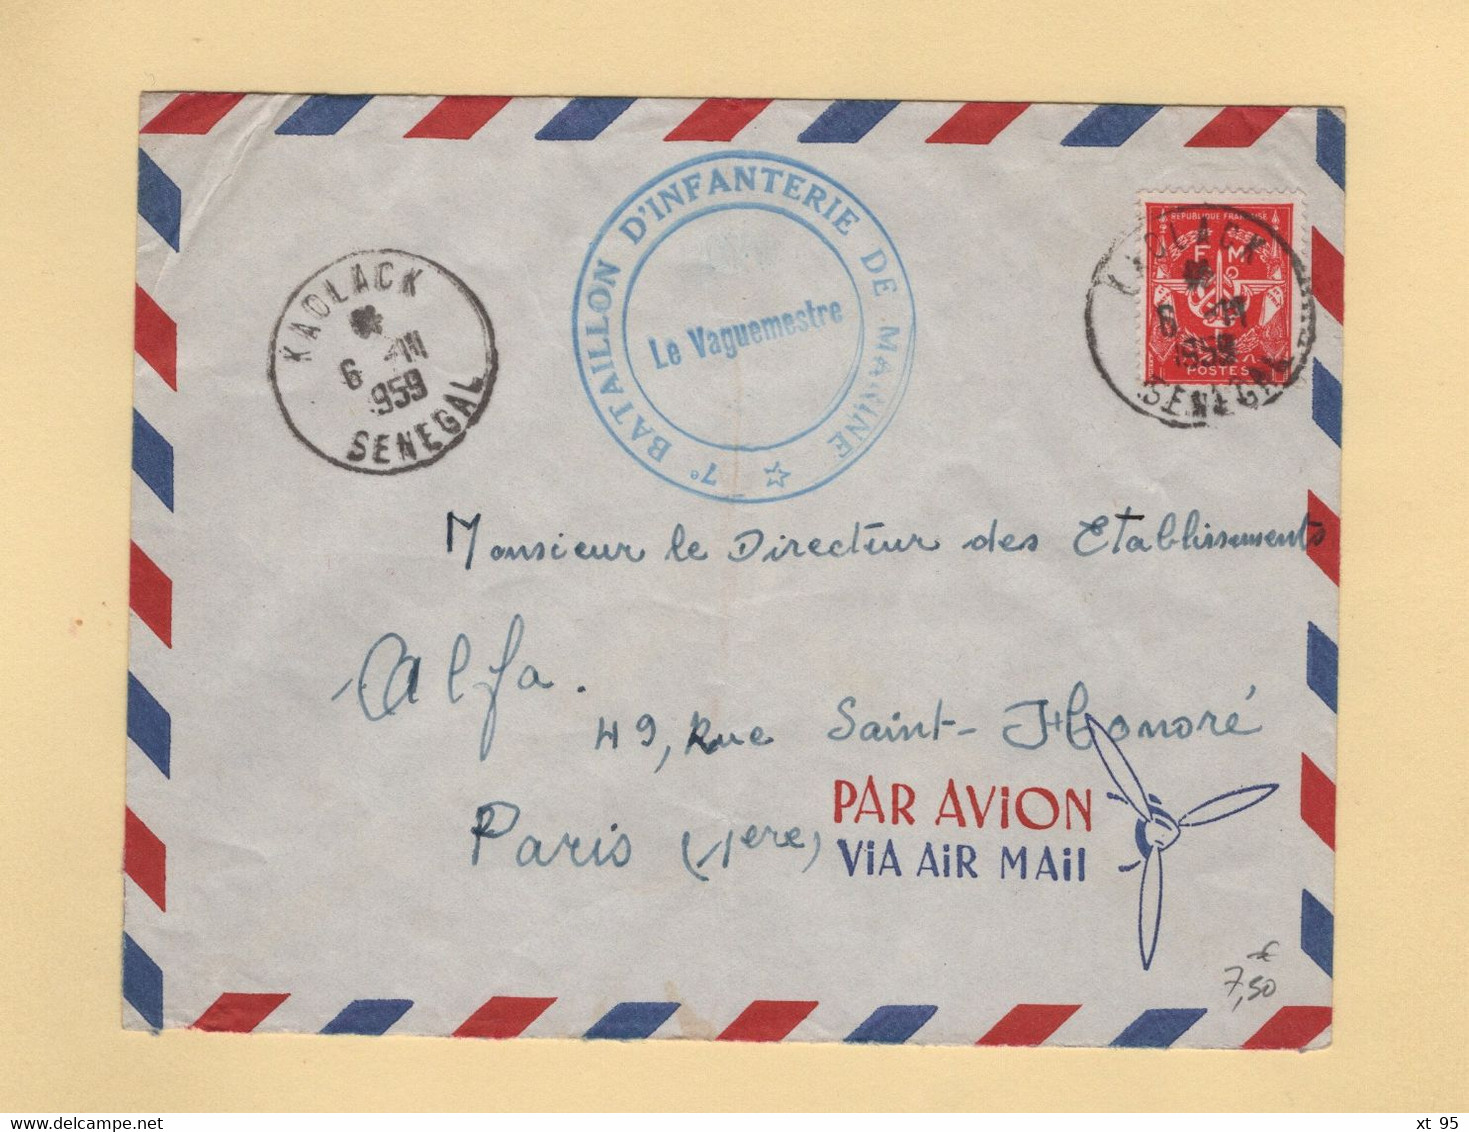 Timbre FM - Kaolack - Senegal - 1959 - 7e Bataillon D Infanterie De Marine - Military Postage Stamps